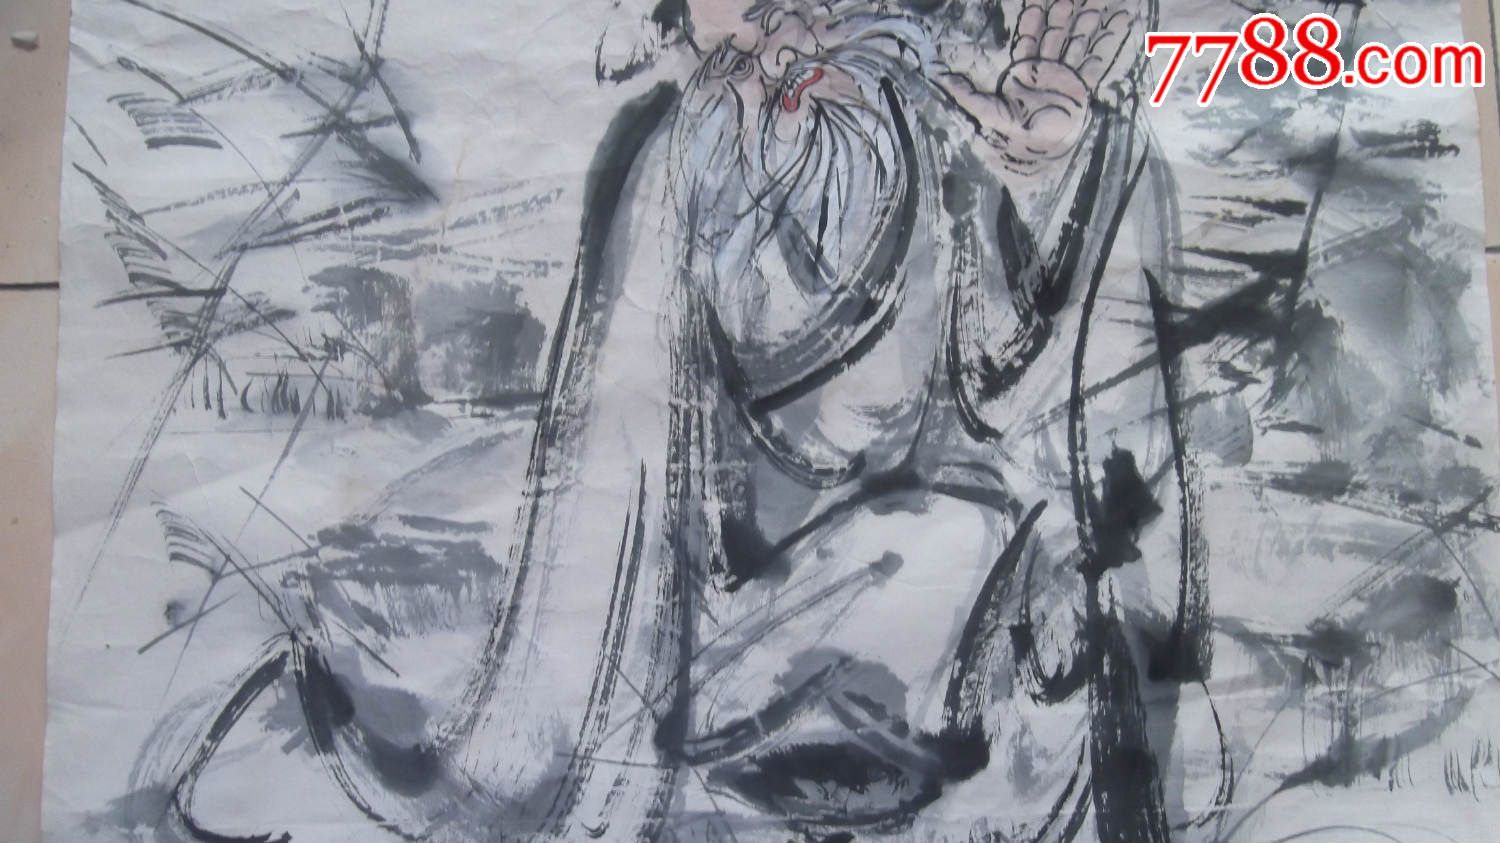 中国水墨大写意人物画,墨道山人画的四块之一,小孩给老人挖耳